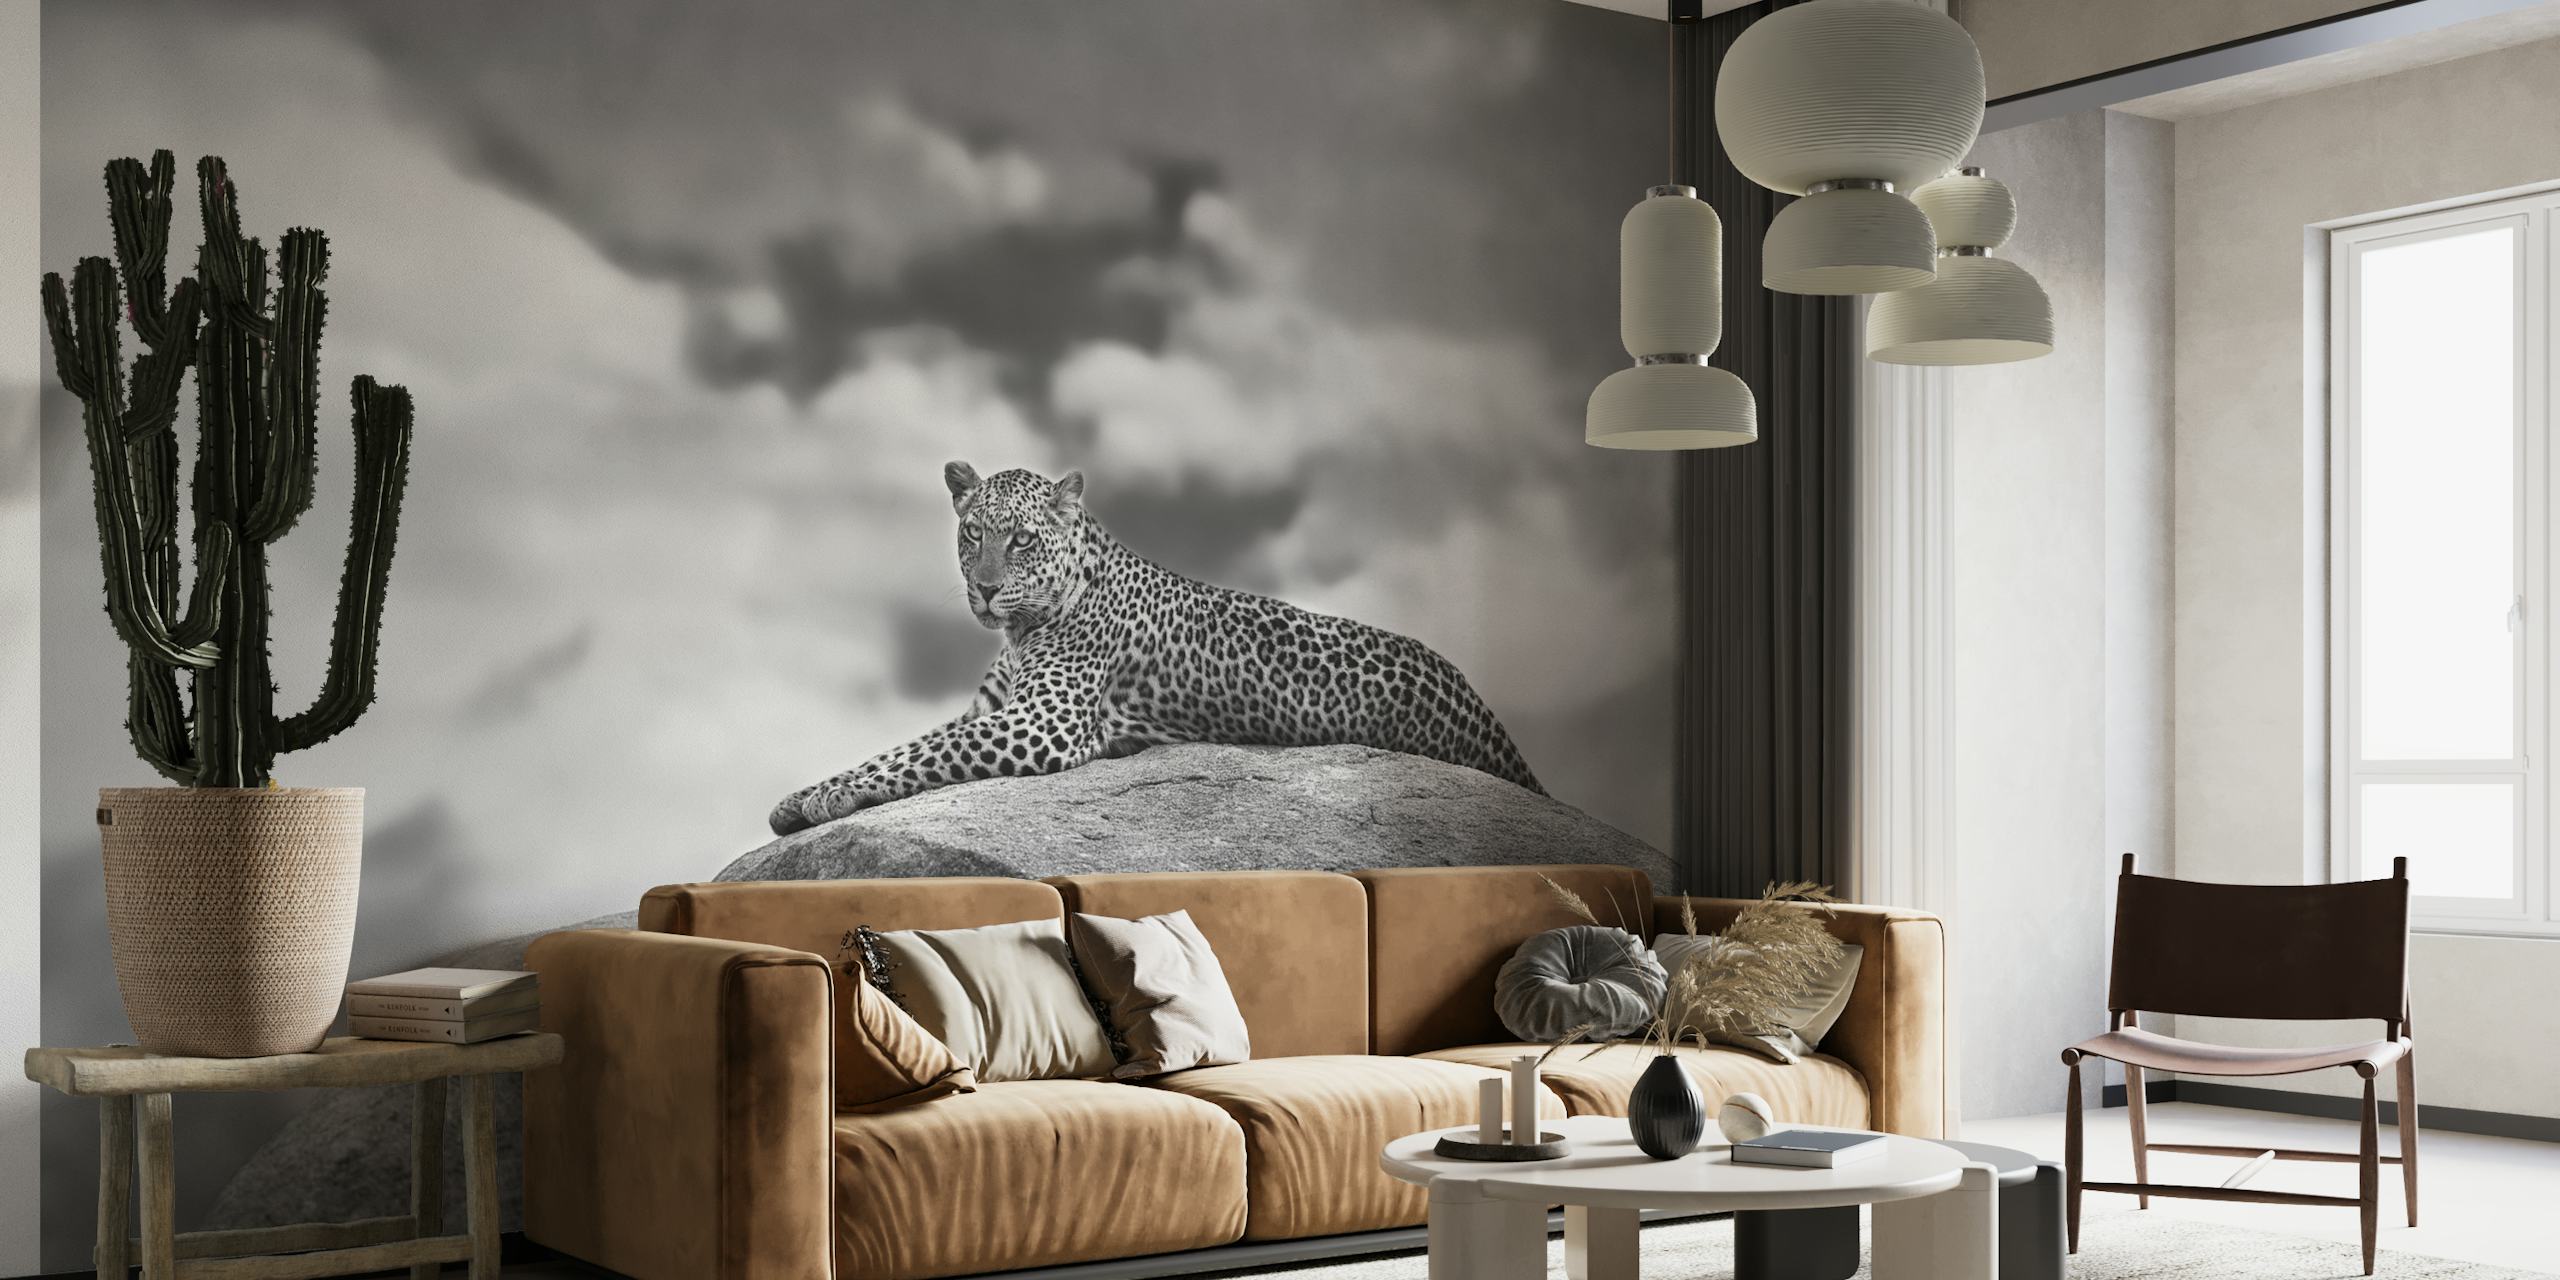 Leopard on a Kopje papel pintado